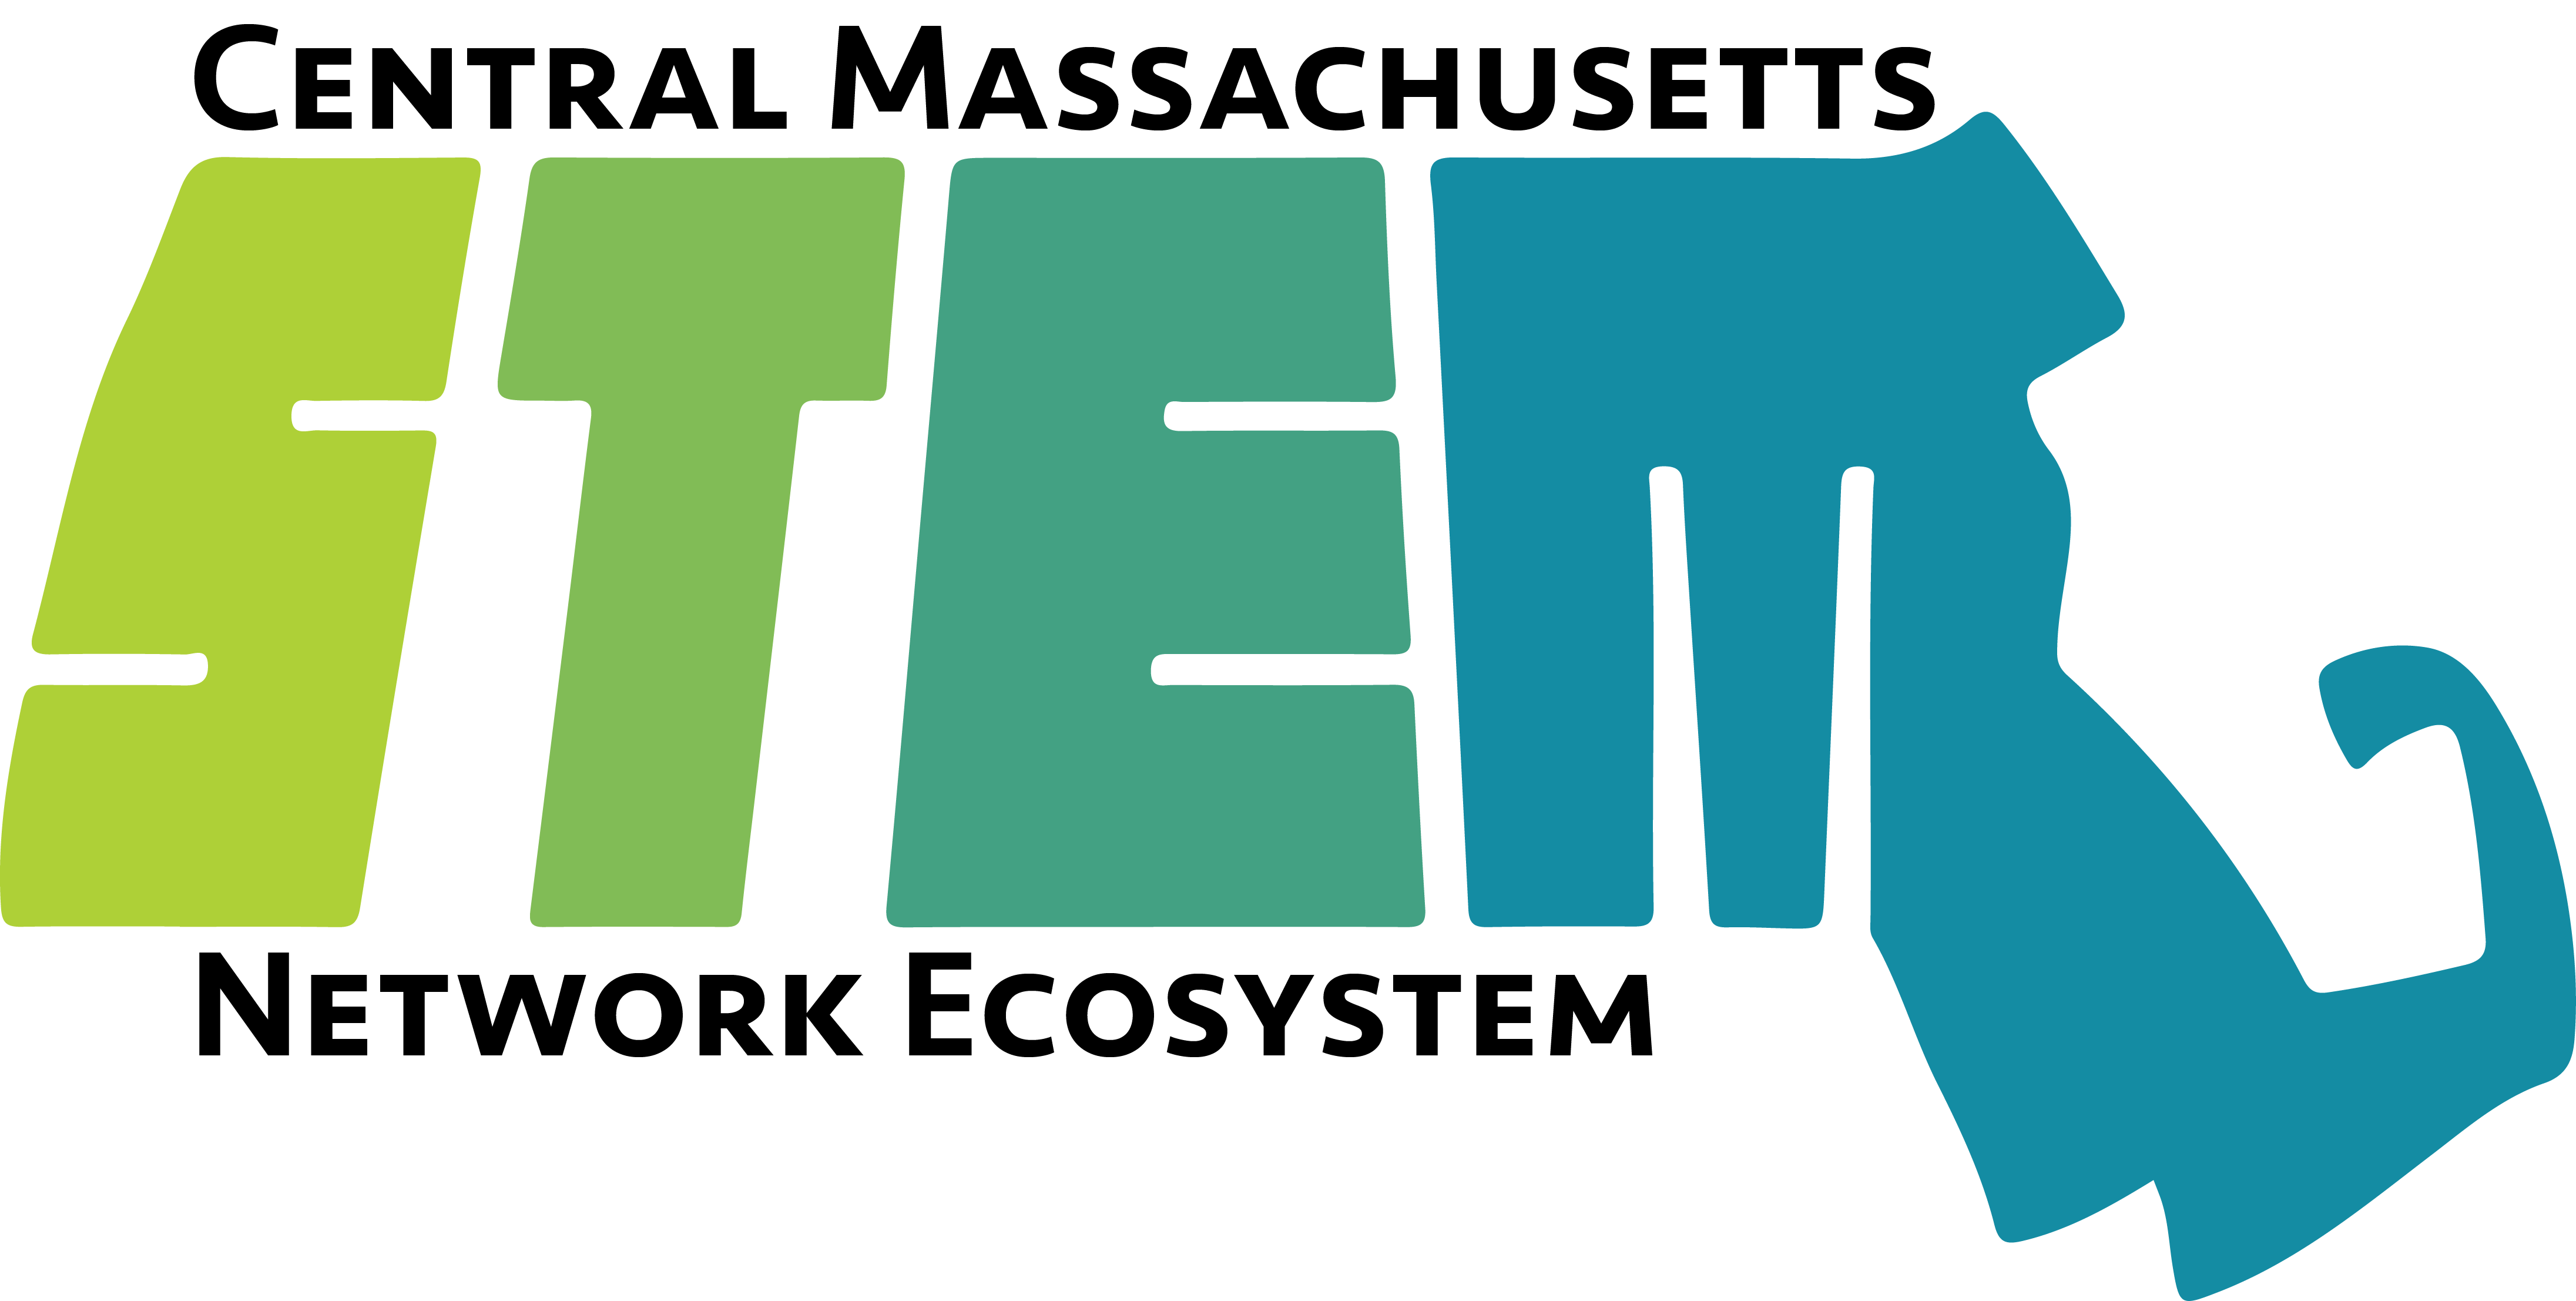 Central Massachusetts STEM Network Ecosystem logo